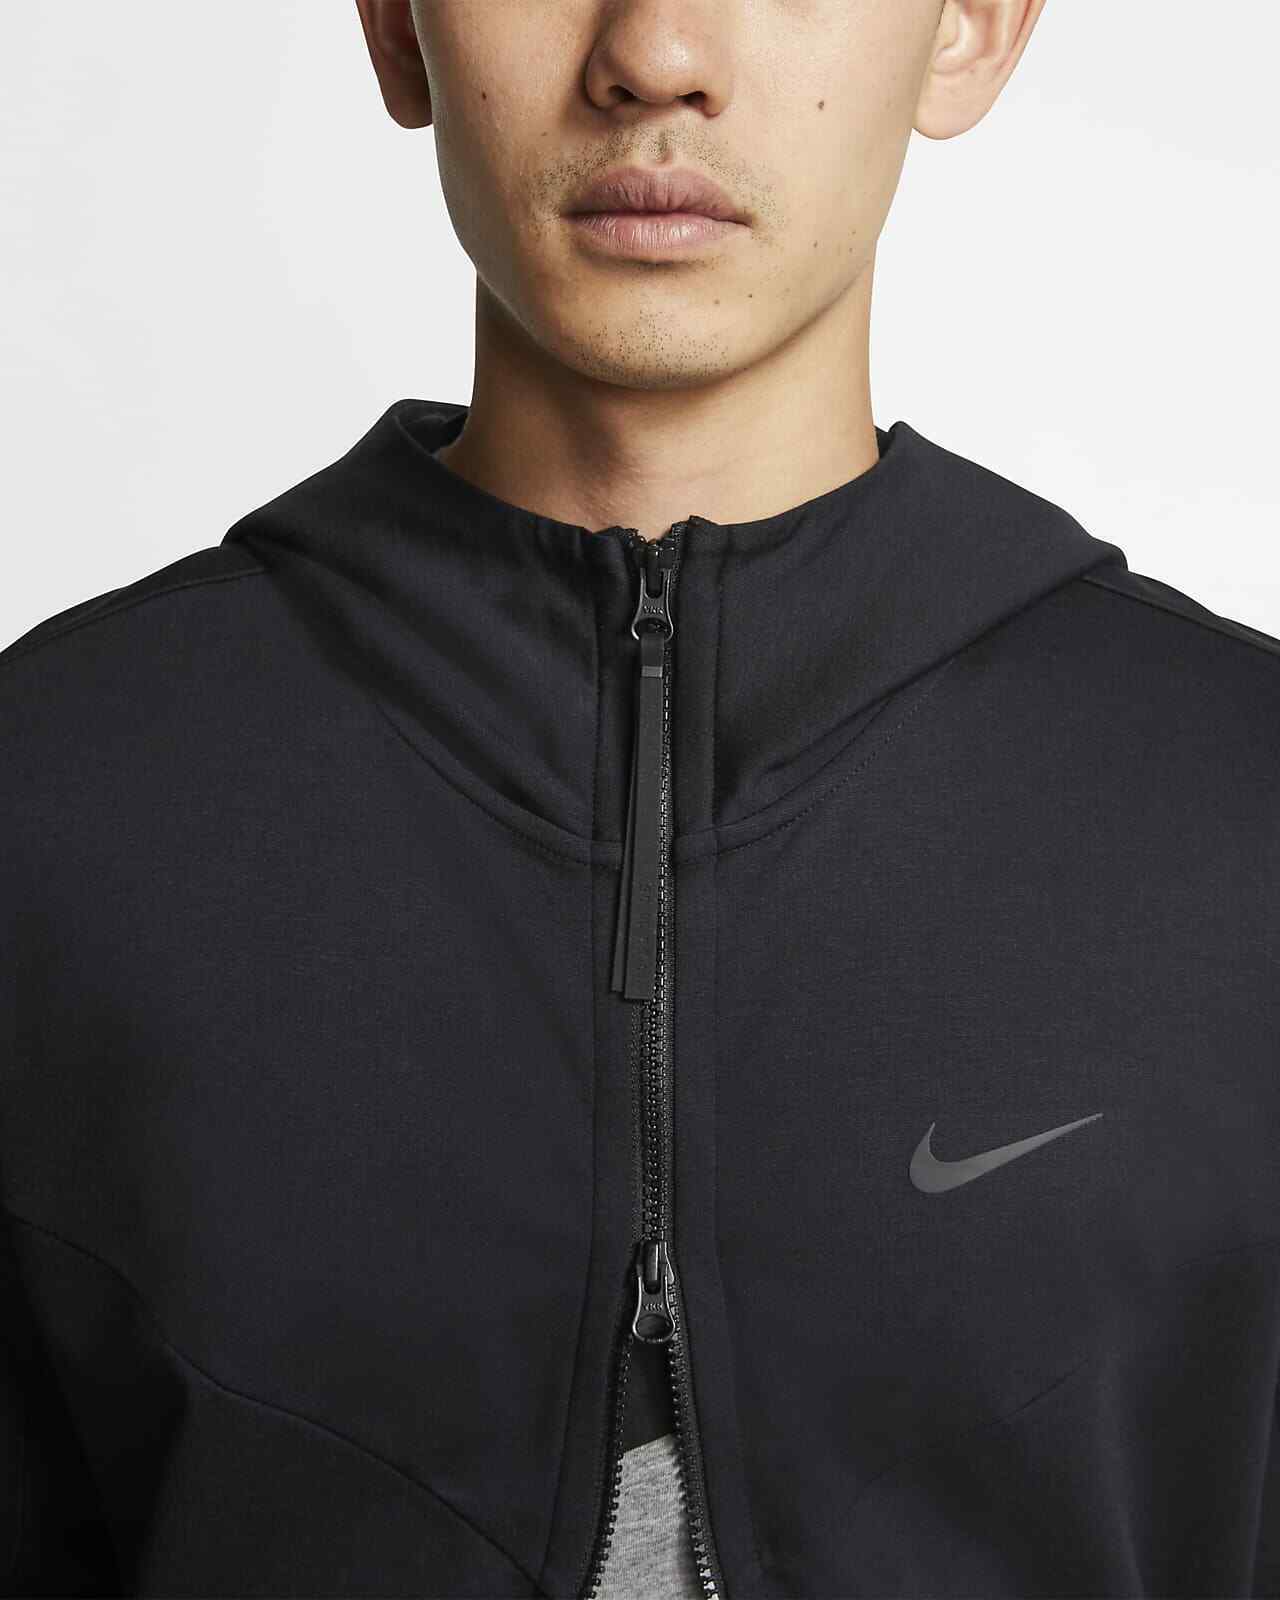 Nike Sportswear Tech Pack Men's Hooded Full-Zip Jacket (Black) Size XL - image 4 of 4